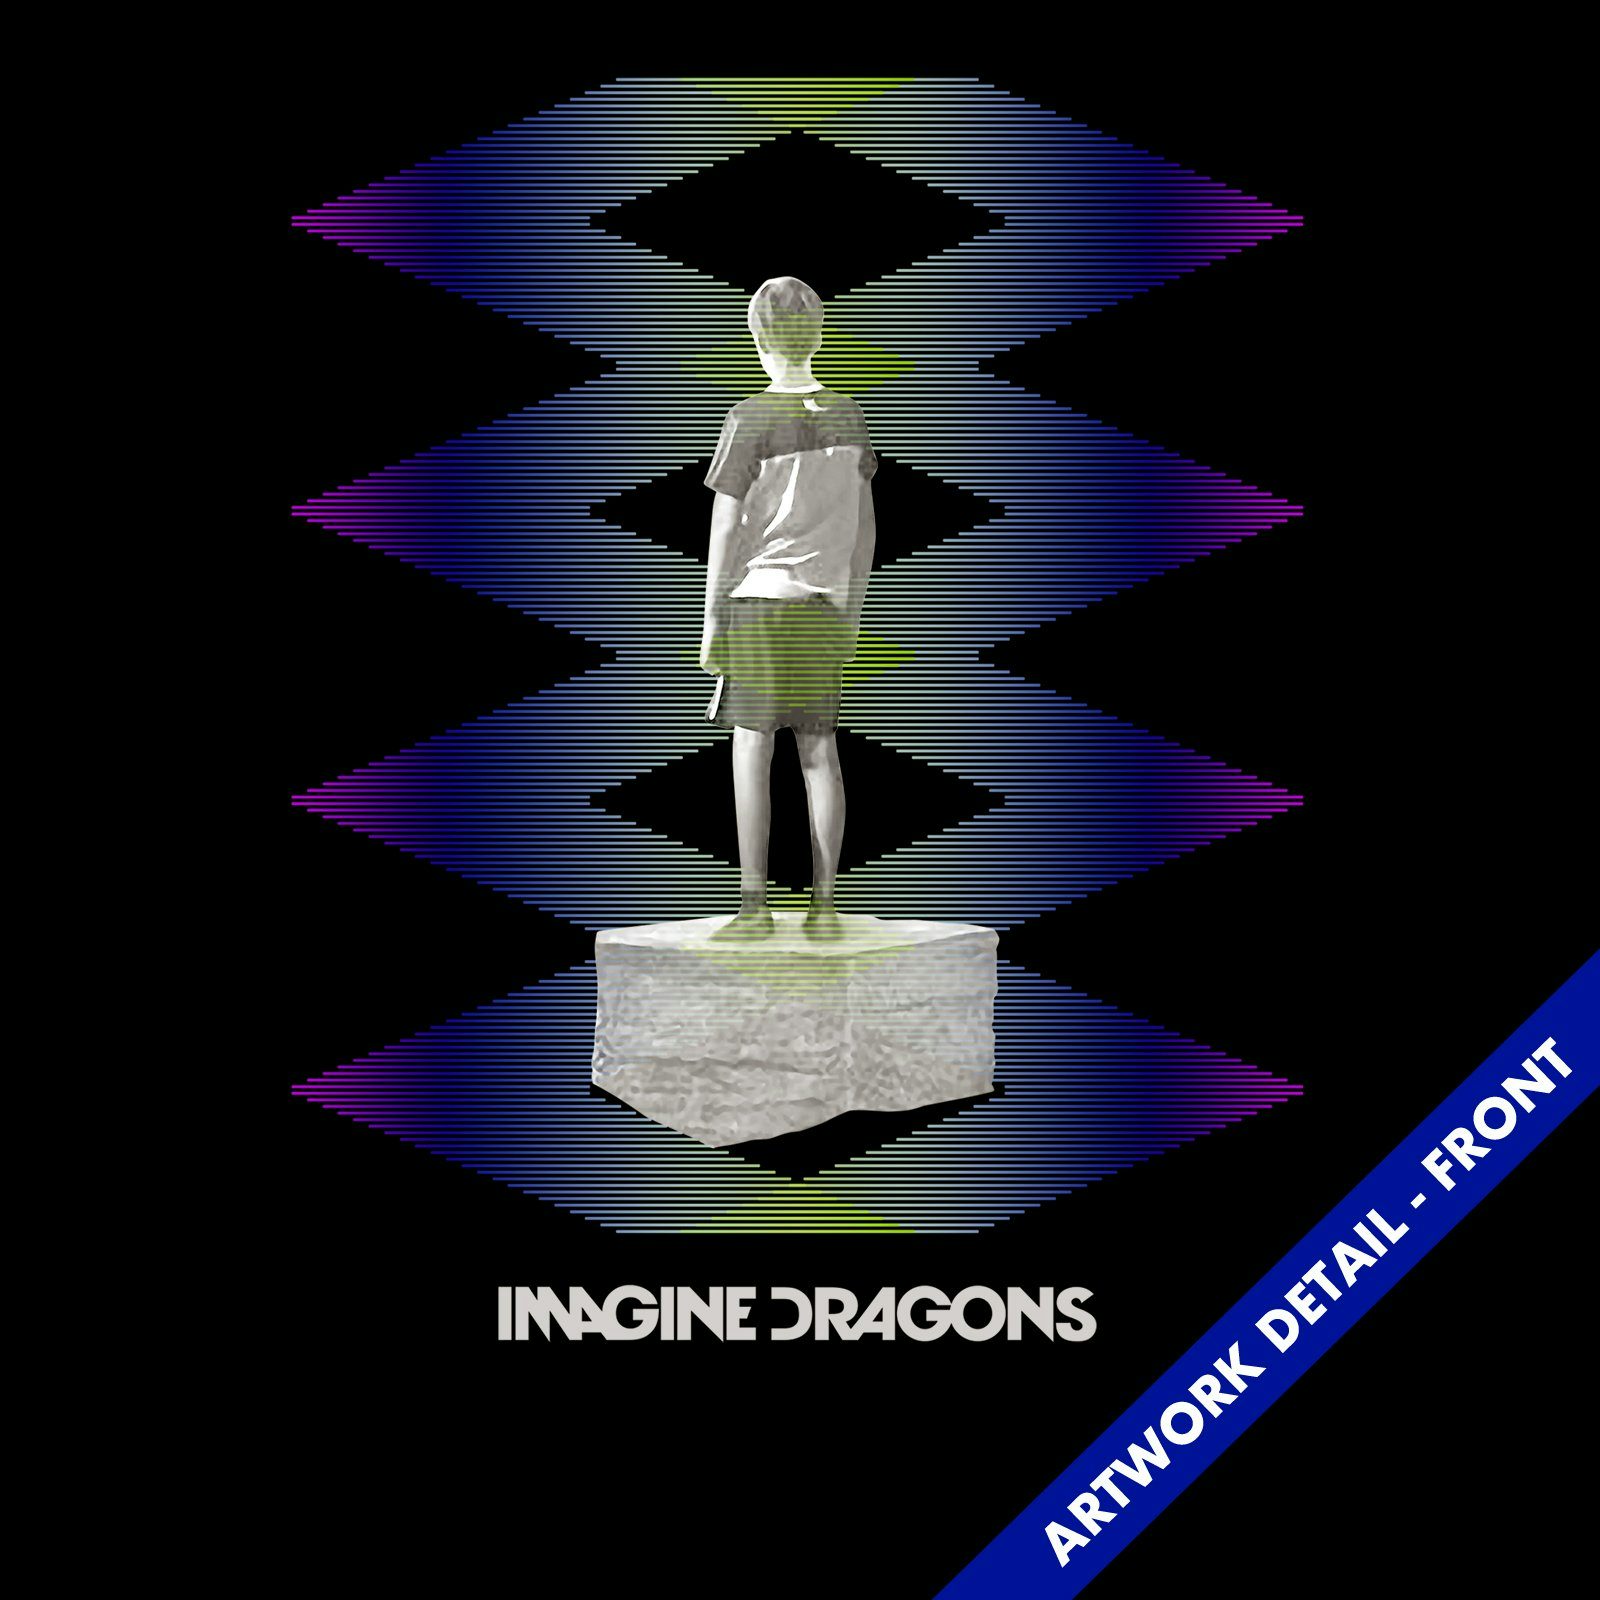 imagine dragons album night visions